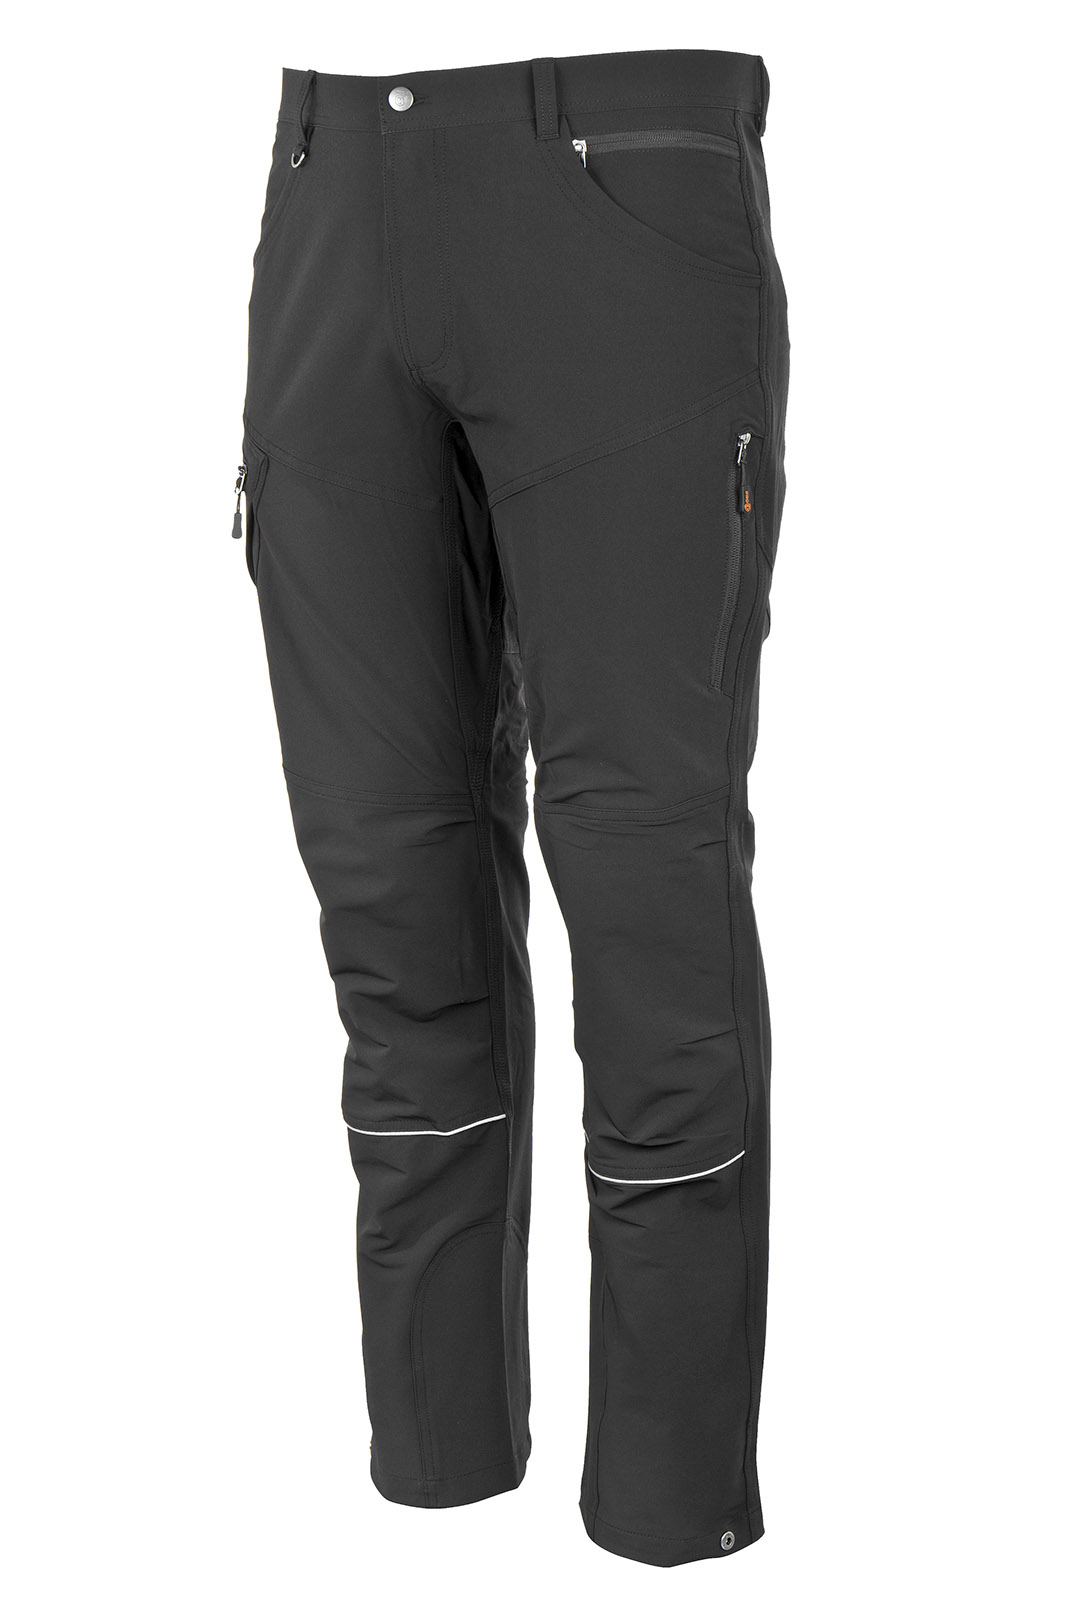 Promacher Outdoorové strečové kalhoty FOBOS TROUSERS BLACK vel.52